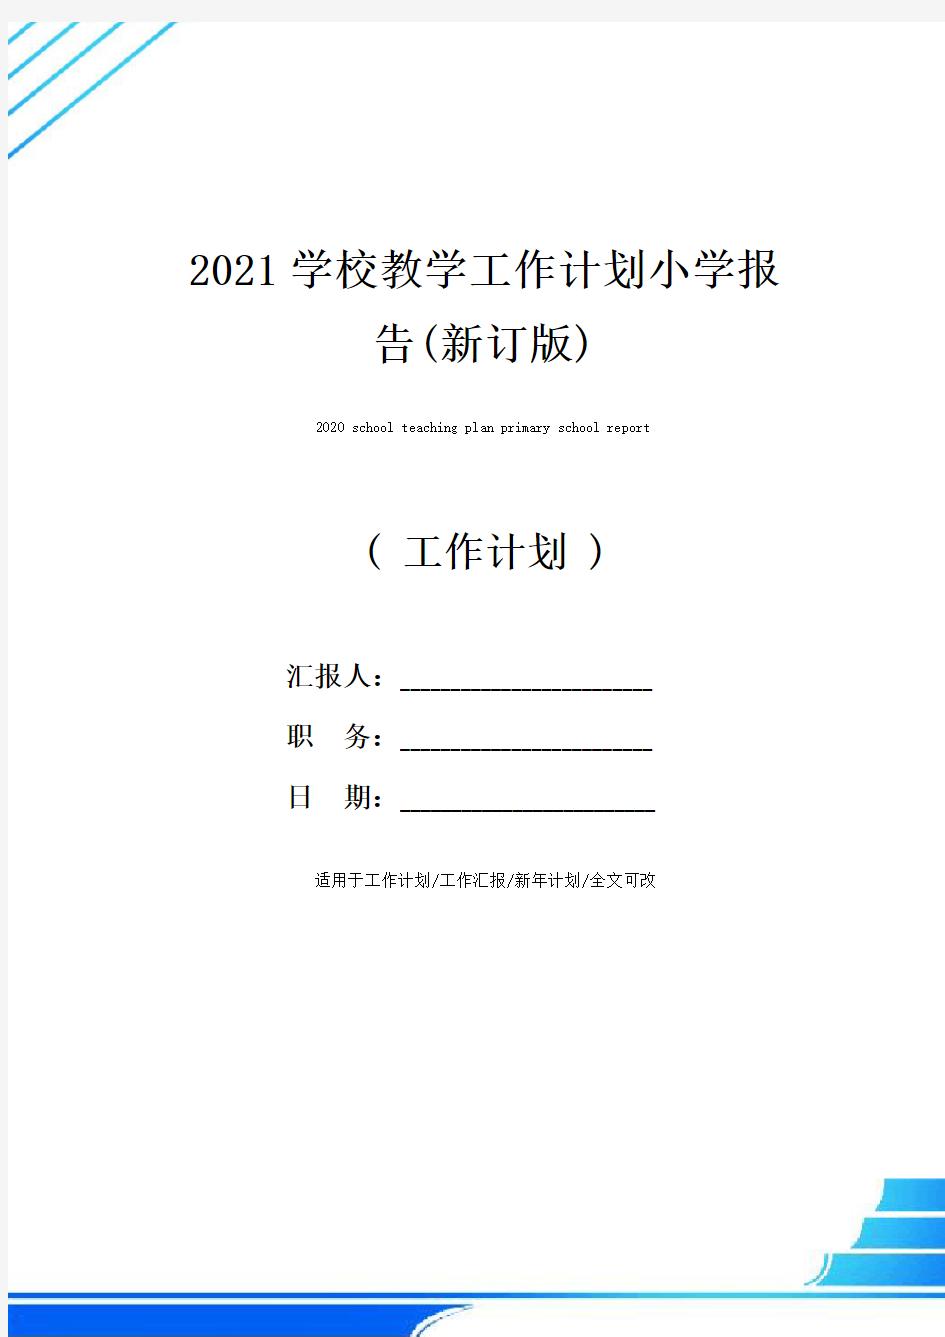 2021学校教学工作计划小学报告(新订版)